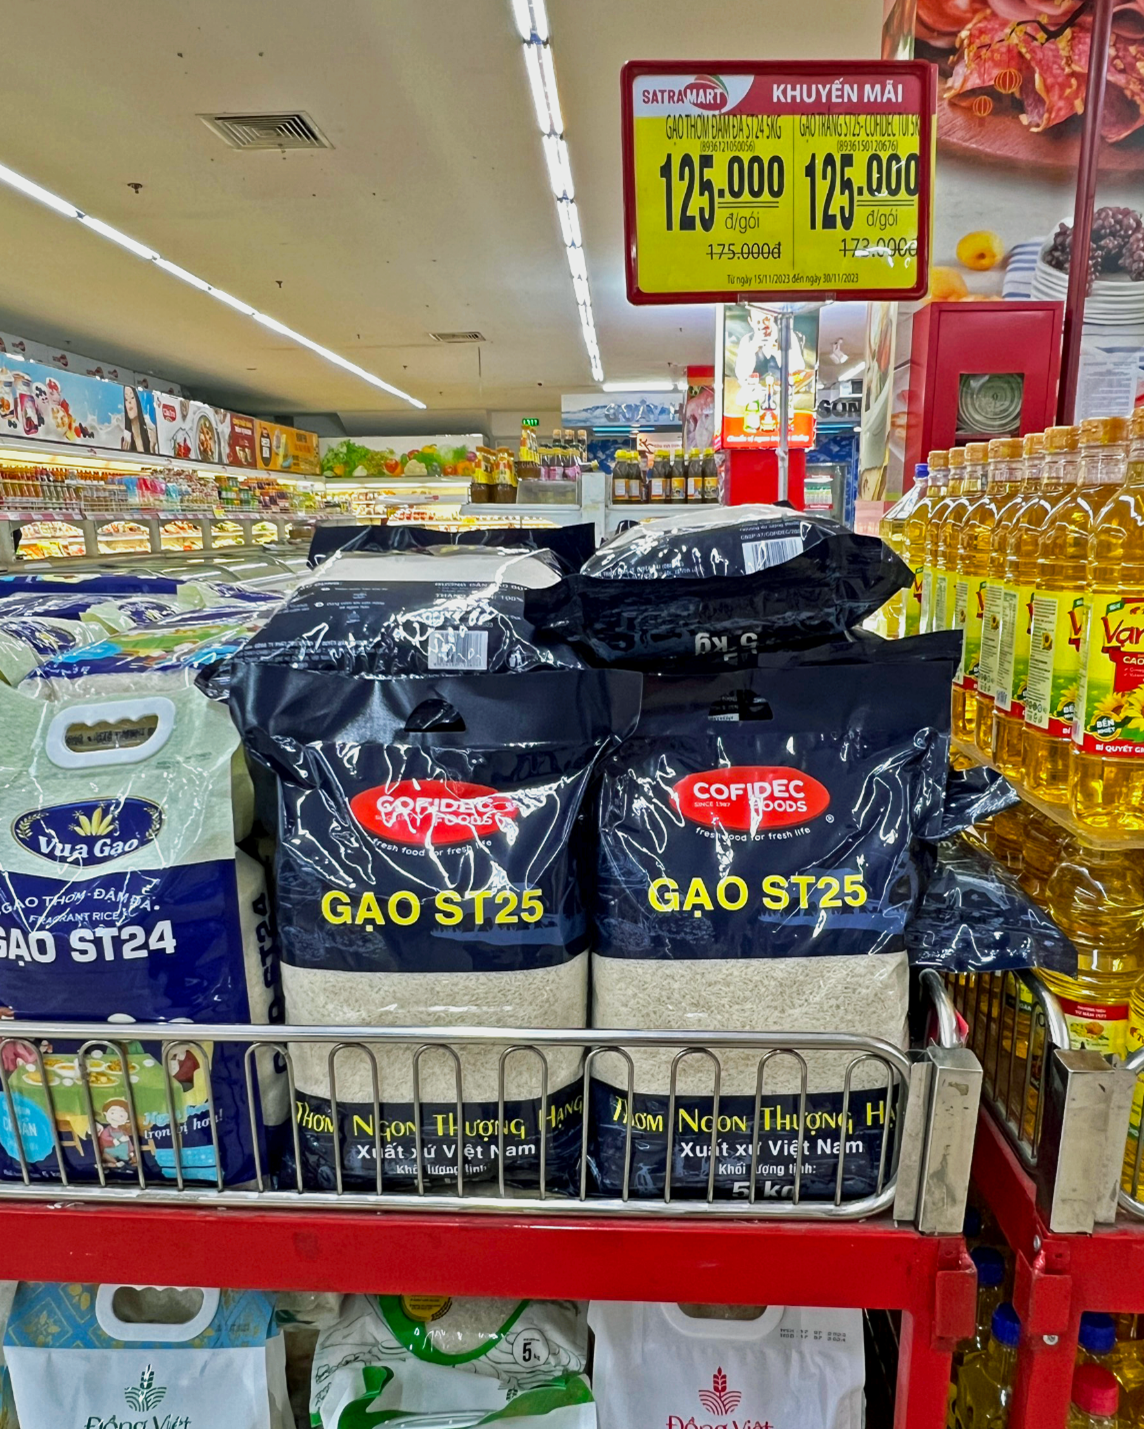 Gạo ST25 COFIDEC tại Siêu thị Sài Gòn (Satra Mart)